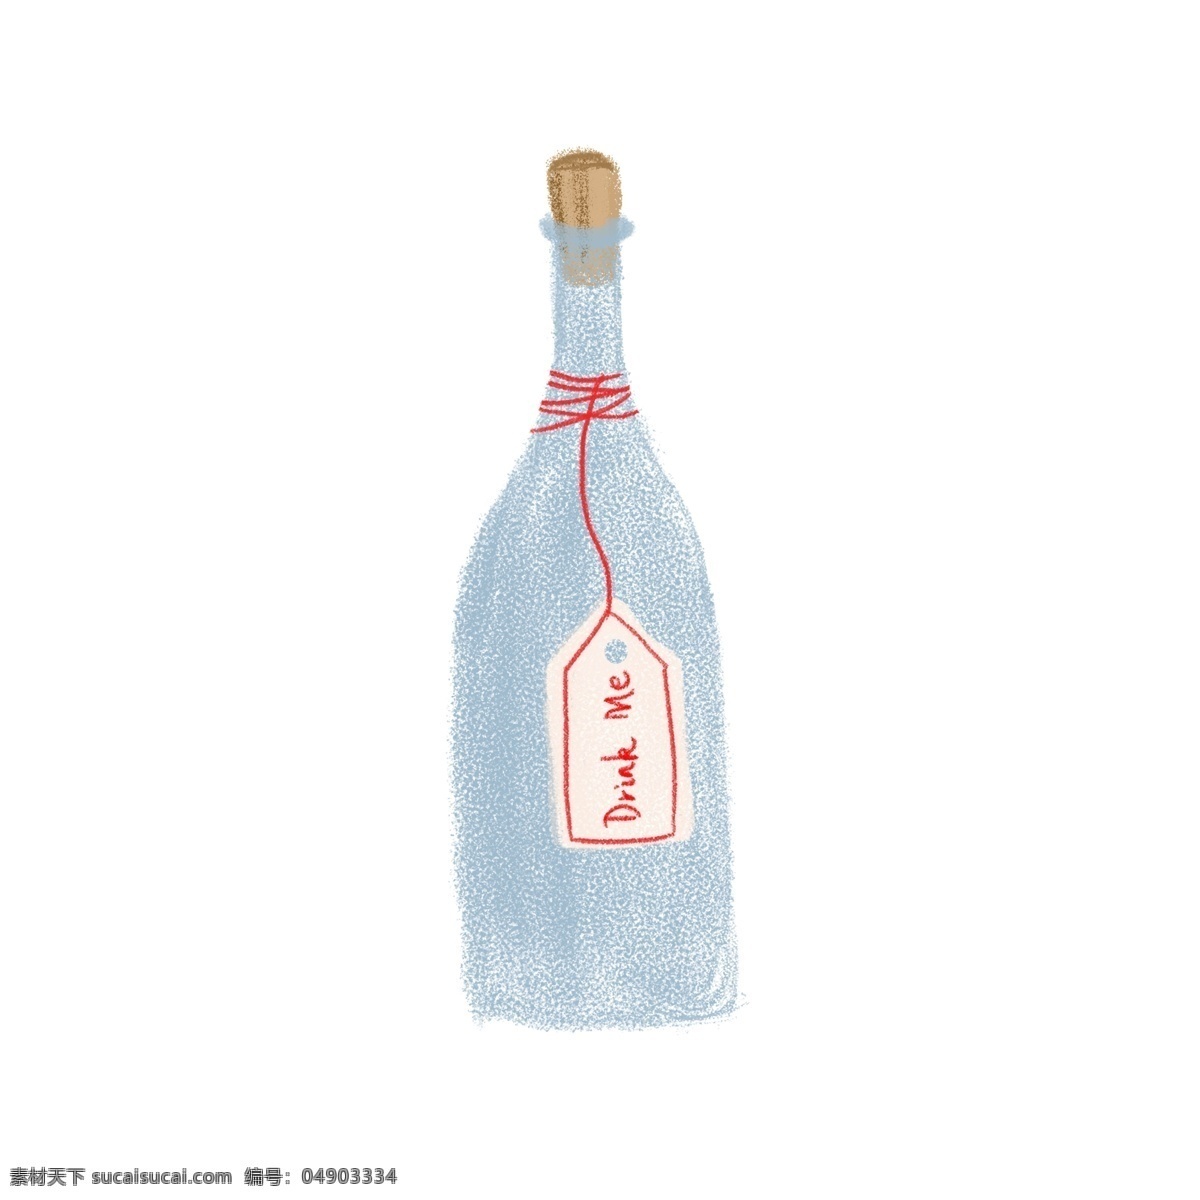 原创 手绘 啤酒 瓶子 商用 手绘瓶子 蓝色瓶子 木塞瓶子 啤酒瓶子 原创瓶子